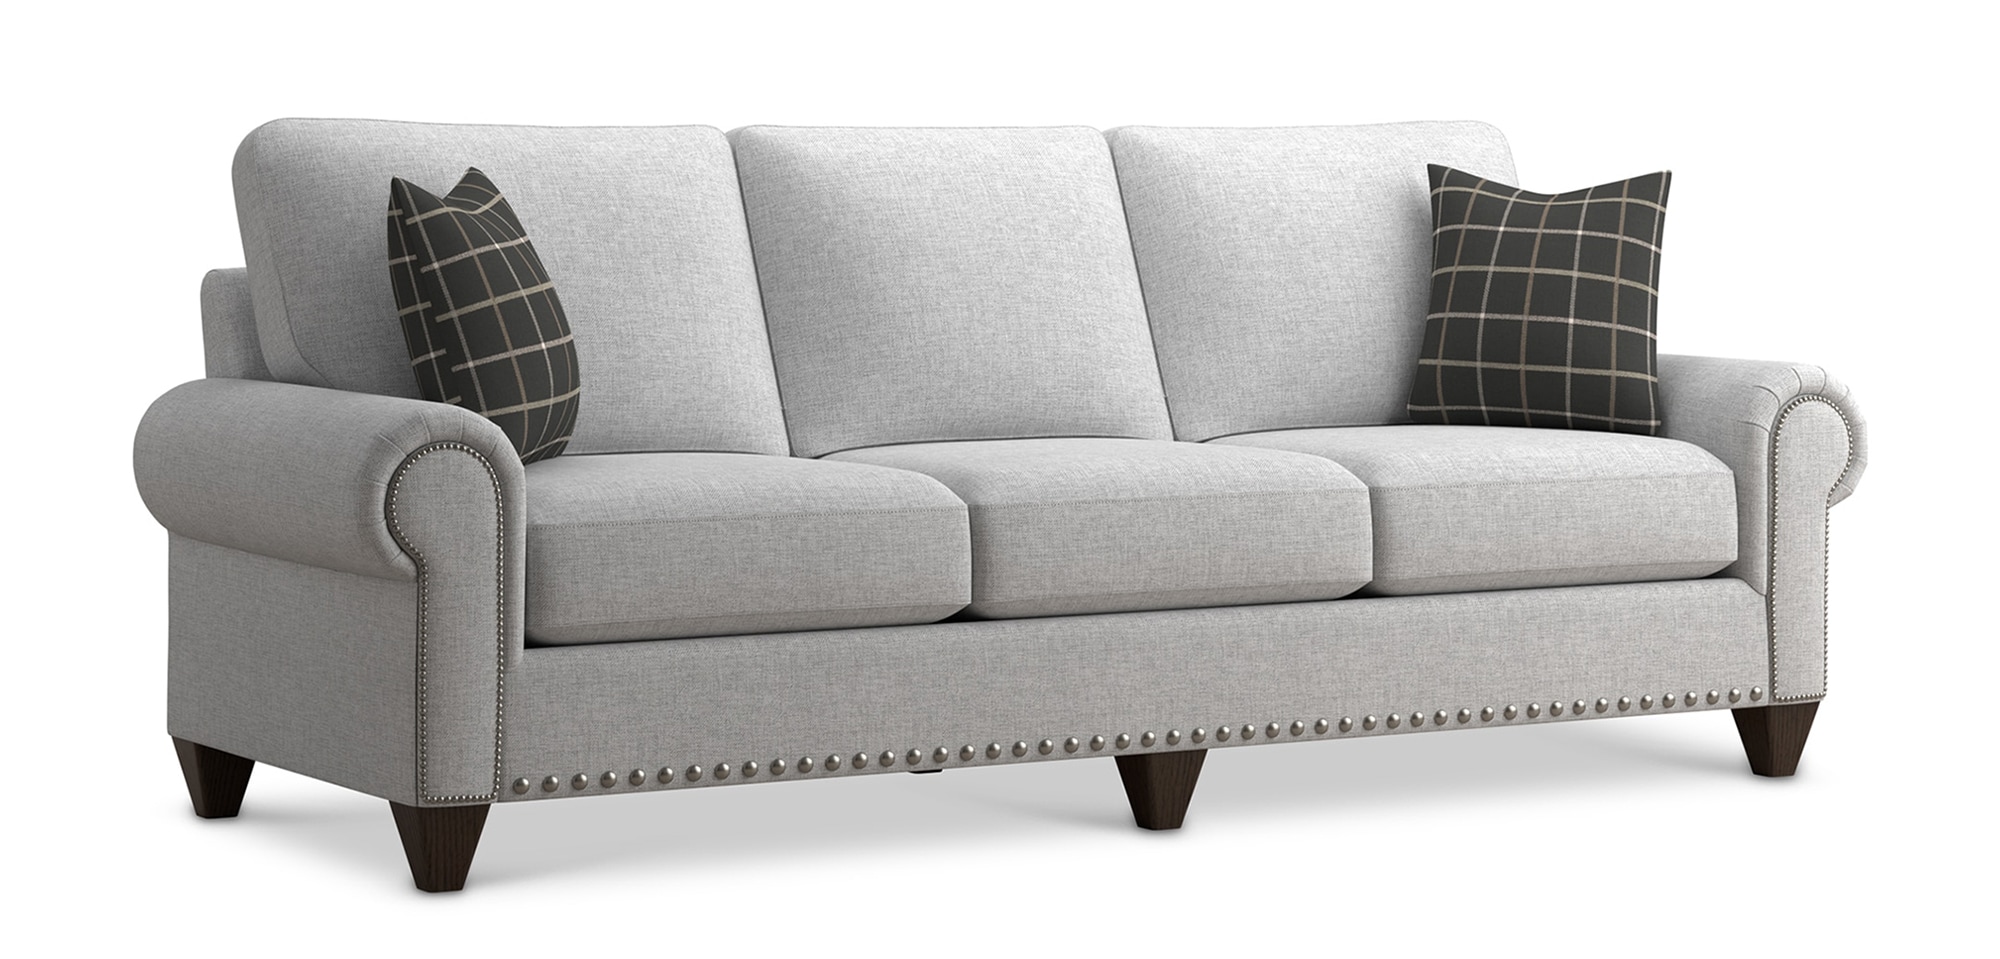 upholstered living room furniture